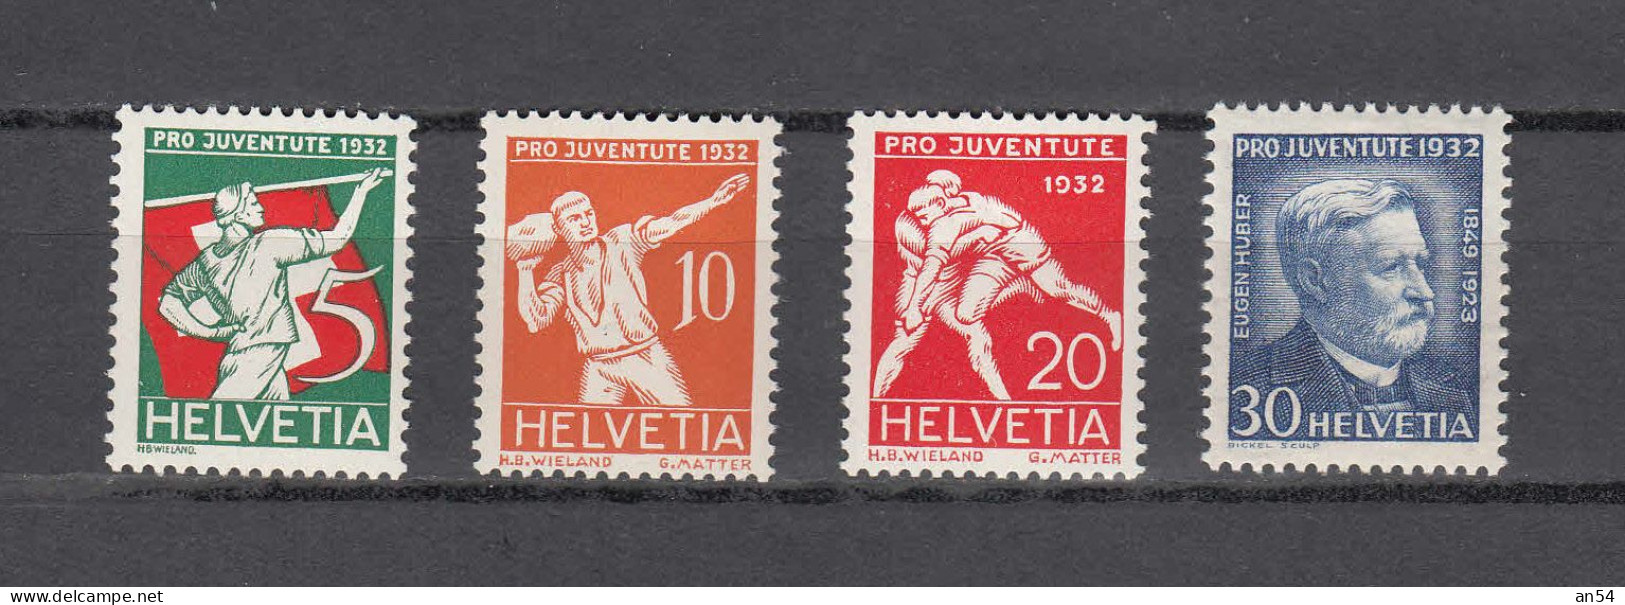 PJ   1932     N° J61 à J64   NEUFS**     COTE 15.00      CATALOGUE SBK - Unused Stamps